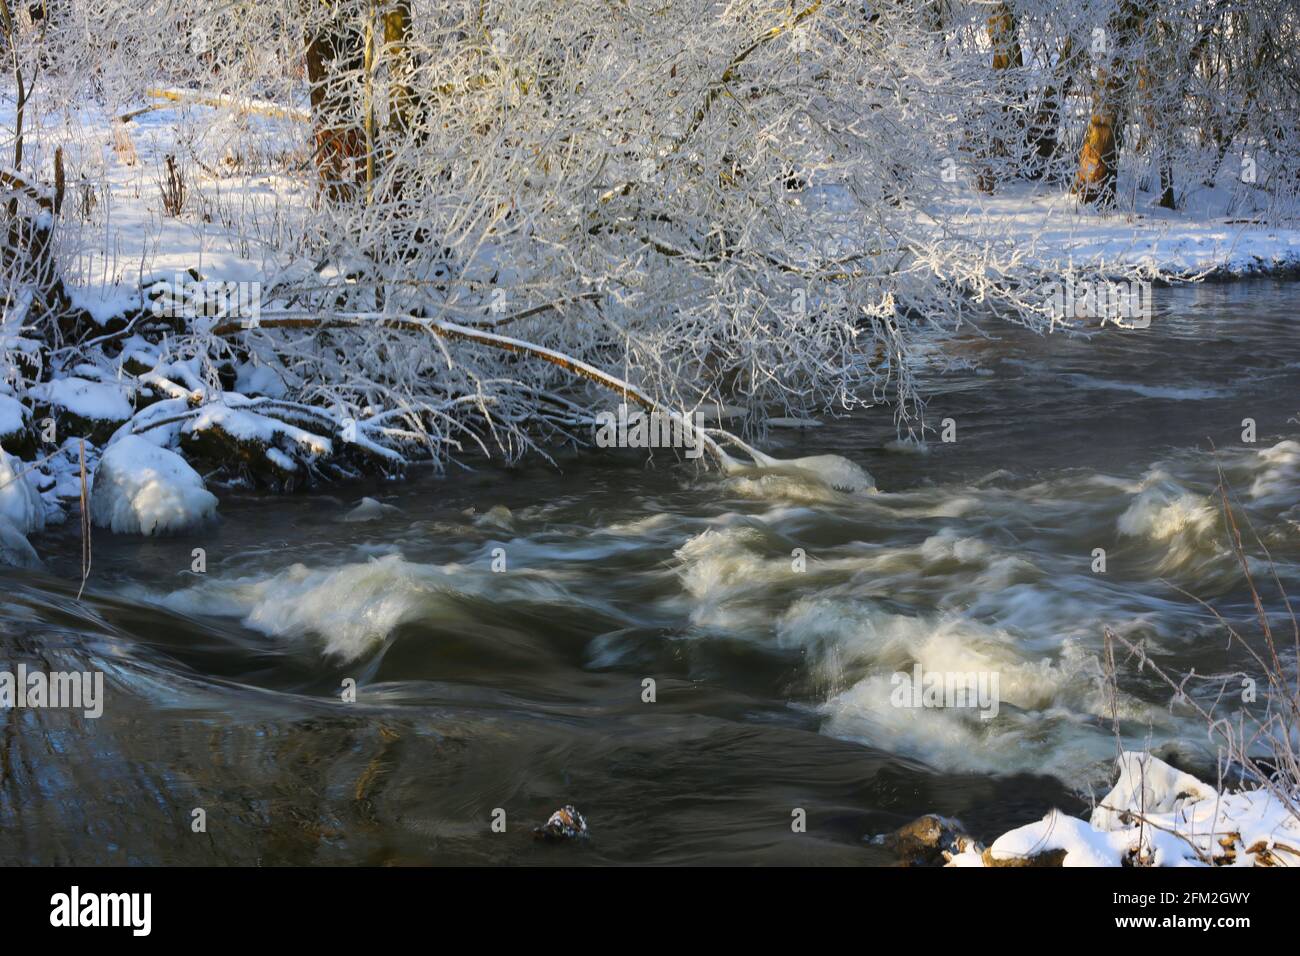 Winterlicher Fluss mit Schnee und Eis und Bäumen und Pflanzen in eisiger Kälte aufgenommen! Standort Hahnbach bei Amberg Oberpfalz Stock Photo